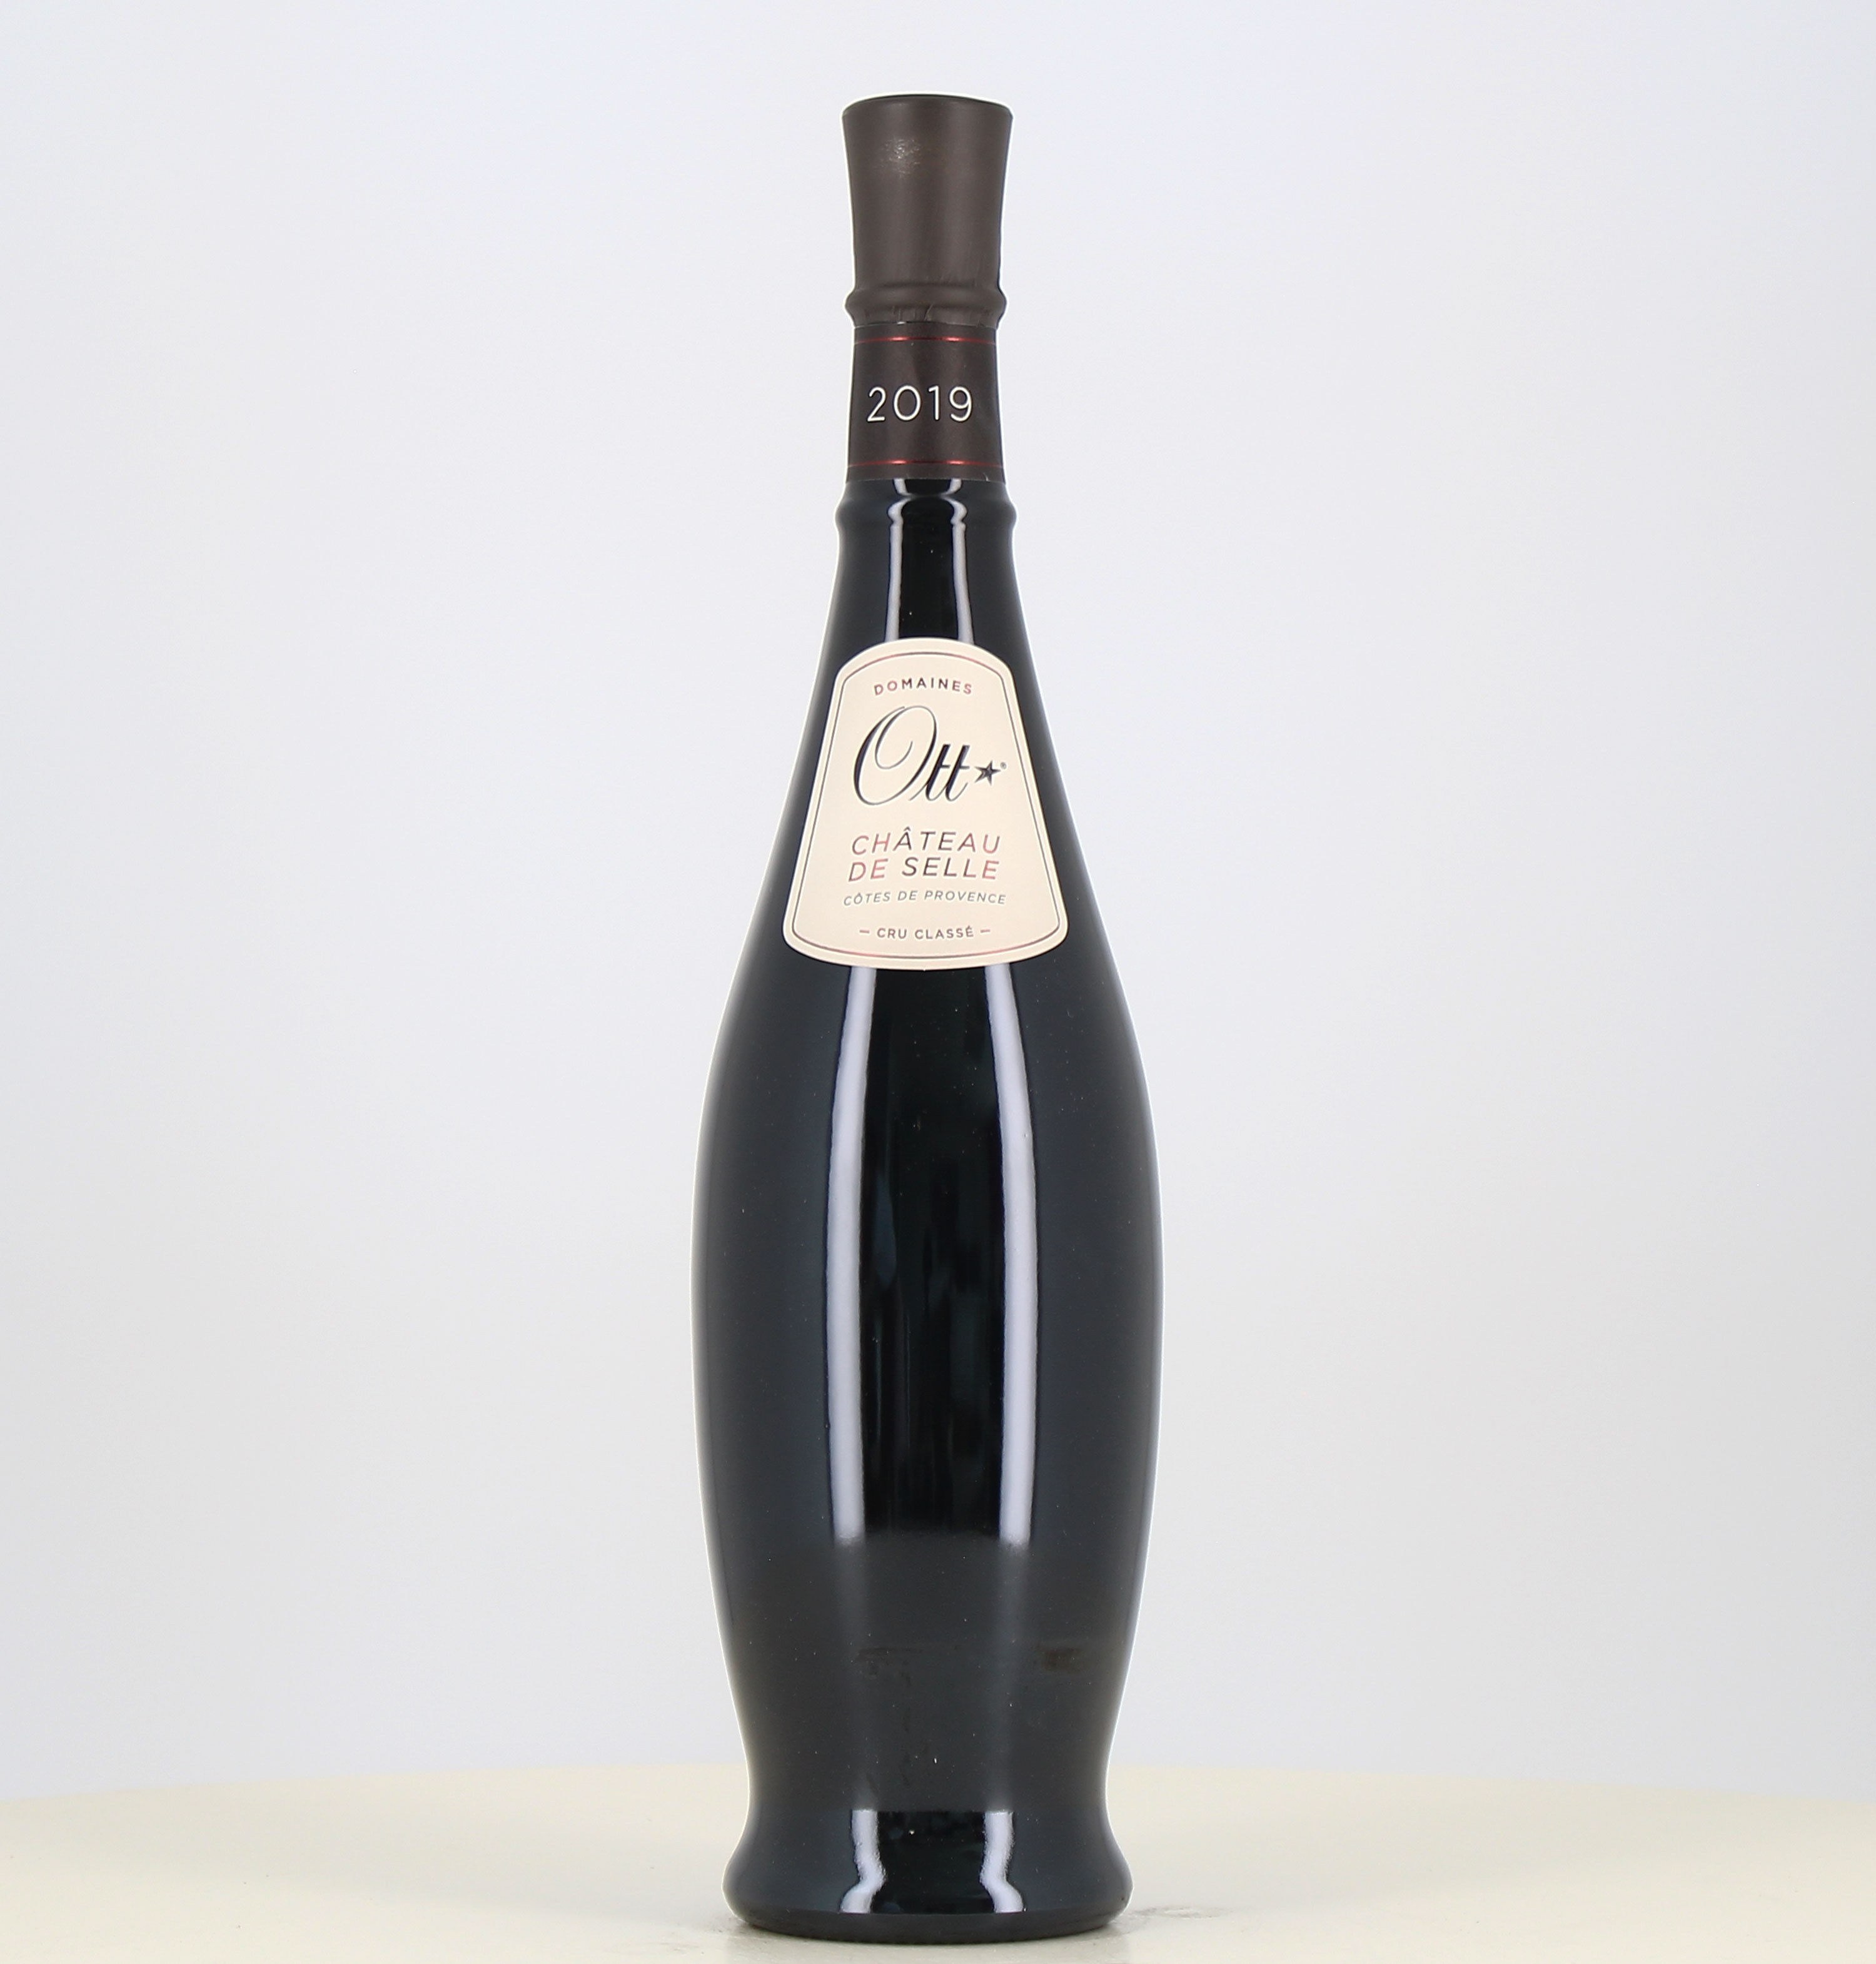 Magnum red wine Ott Côtes de Provence Château de Selle 2019 